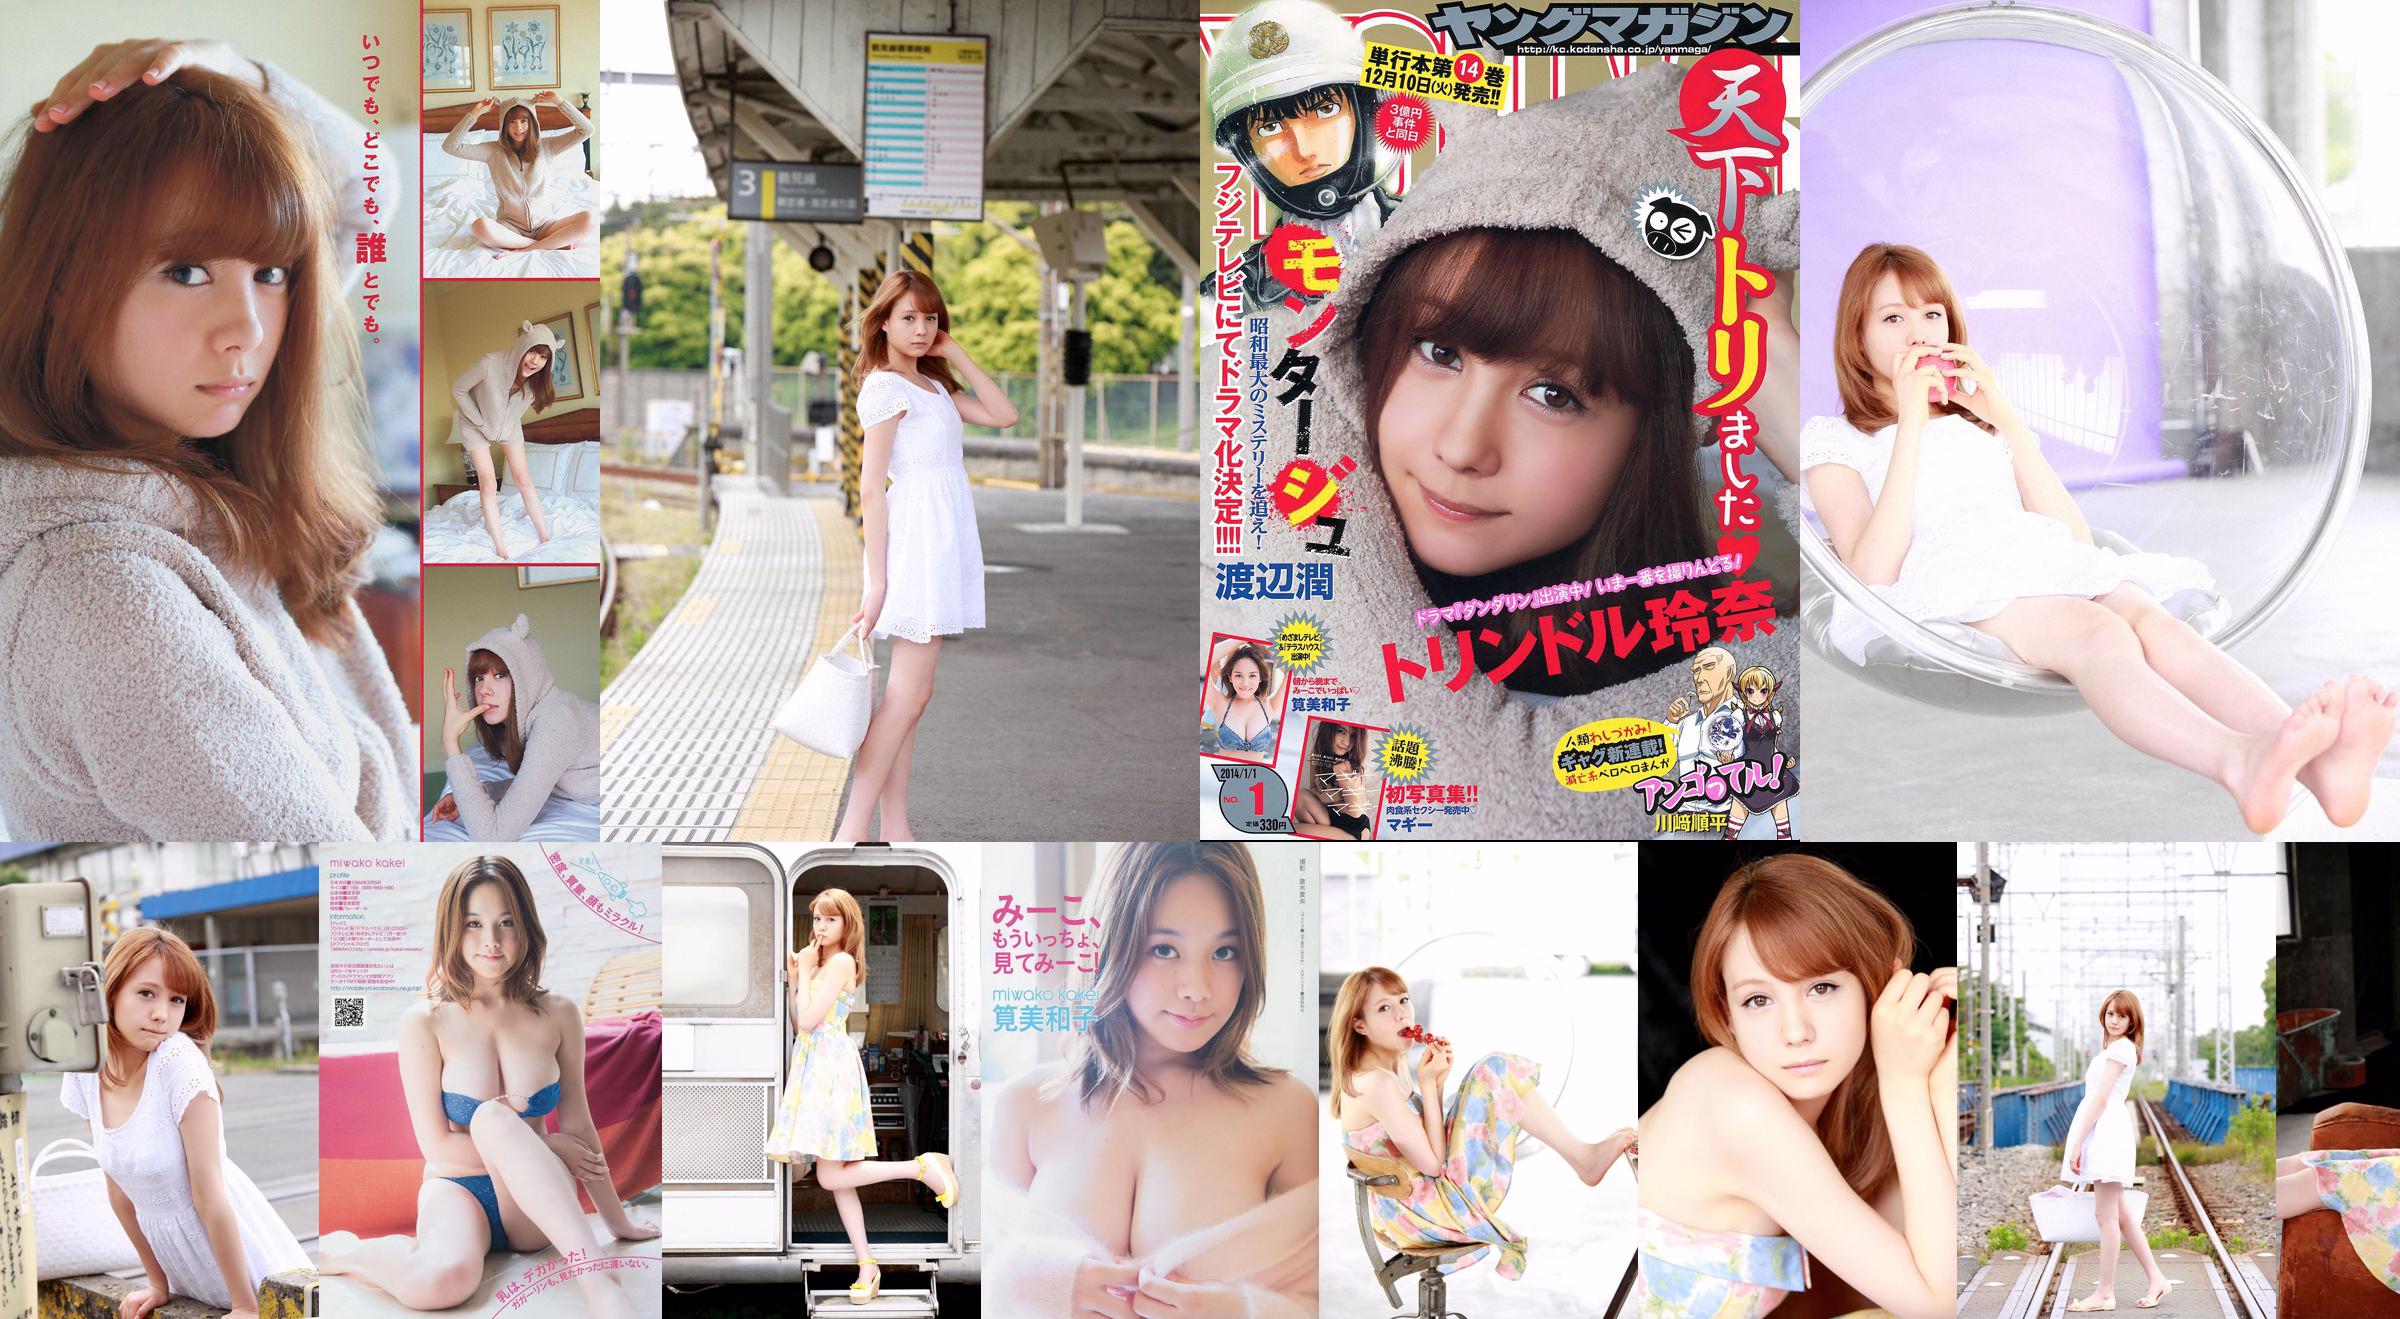 [Young Magazine] Reina Triendl Maggie Miwako Kakei 2014 No.01 Photograph No.76659b หน้า 4